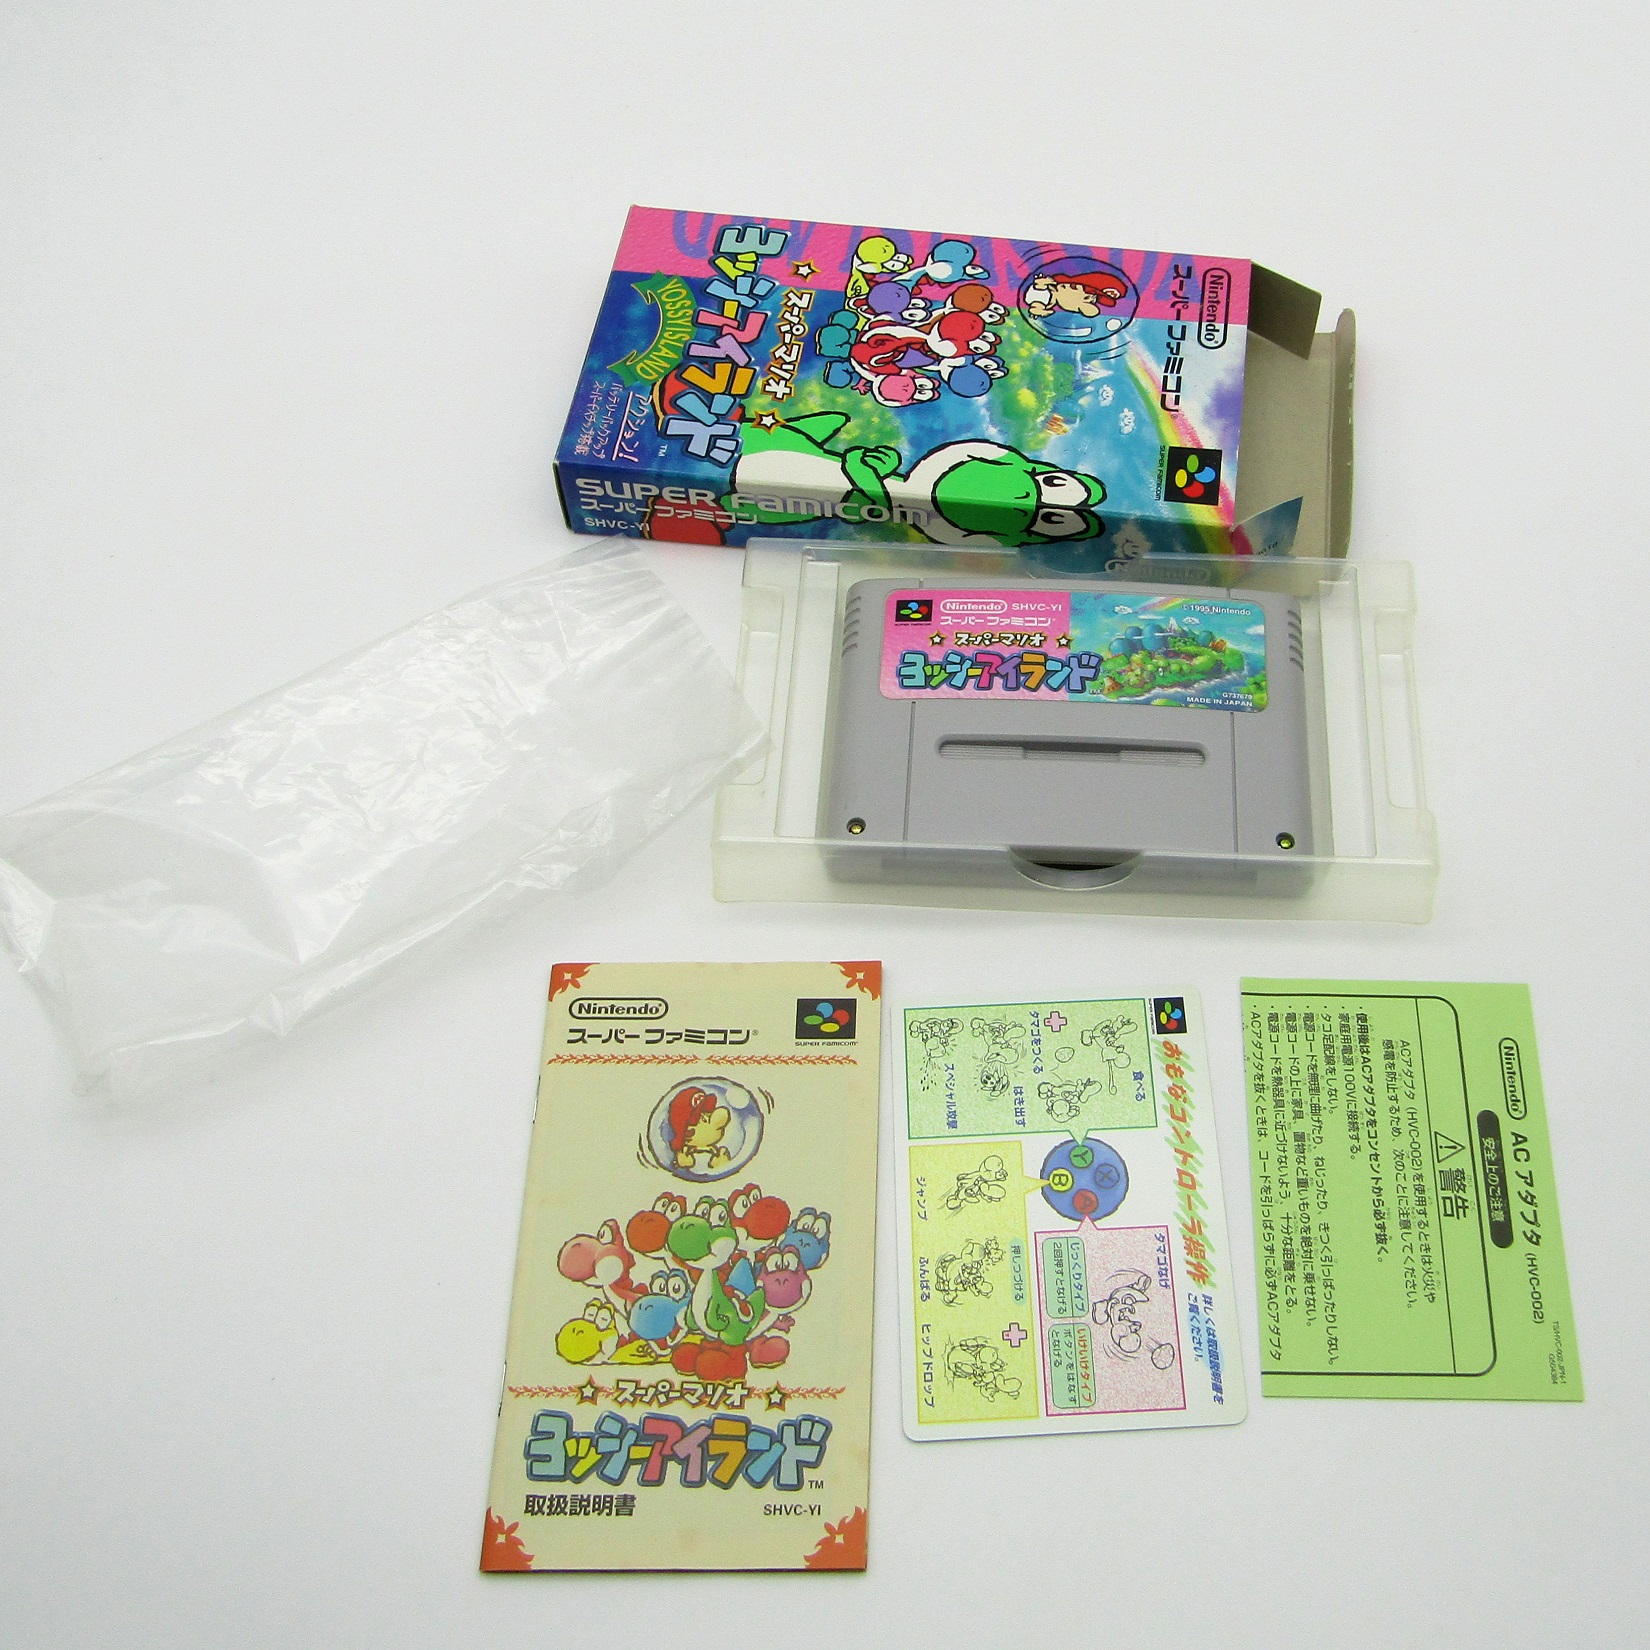 Jeu vidéo Nintendo. Console Super Famicom. Super Mario World 2 : Yoshis Island